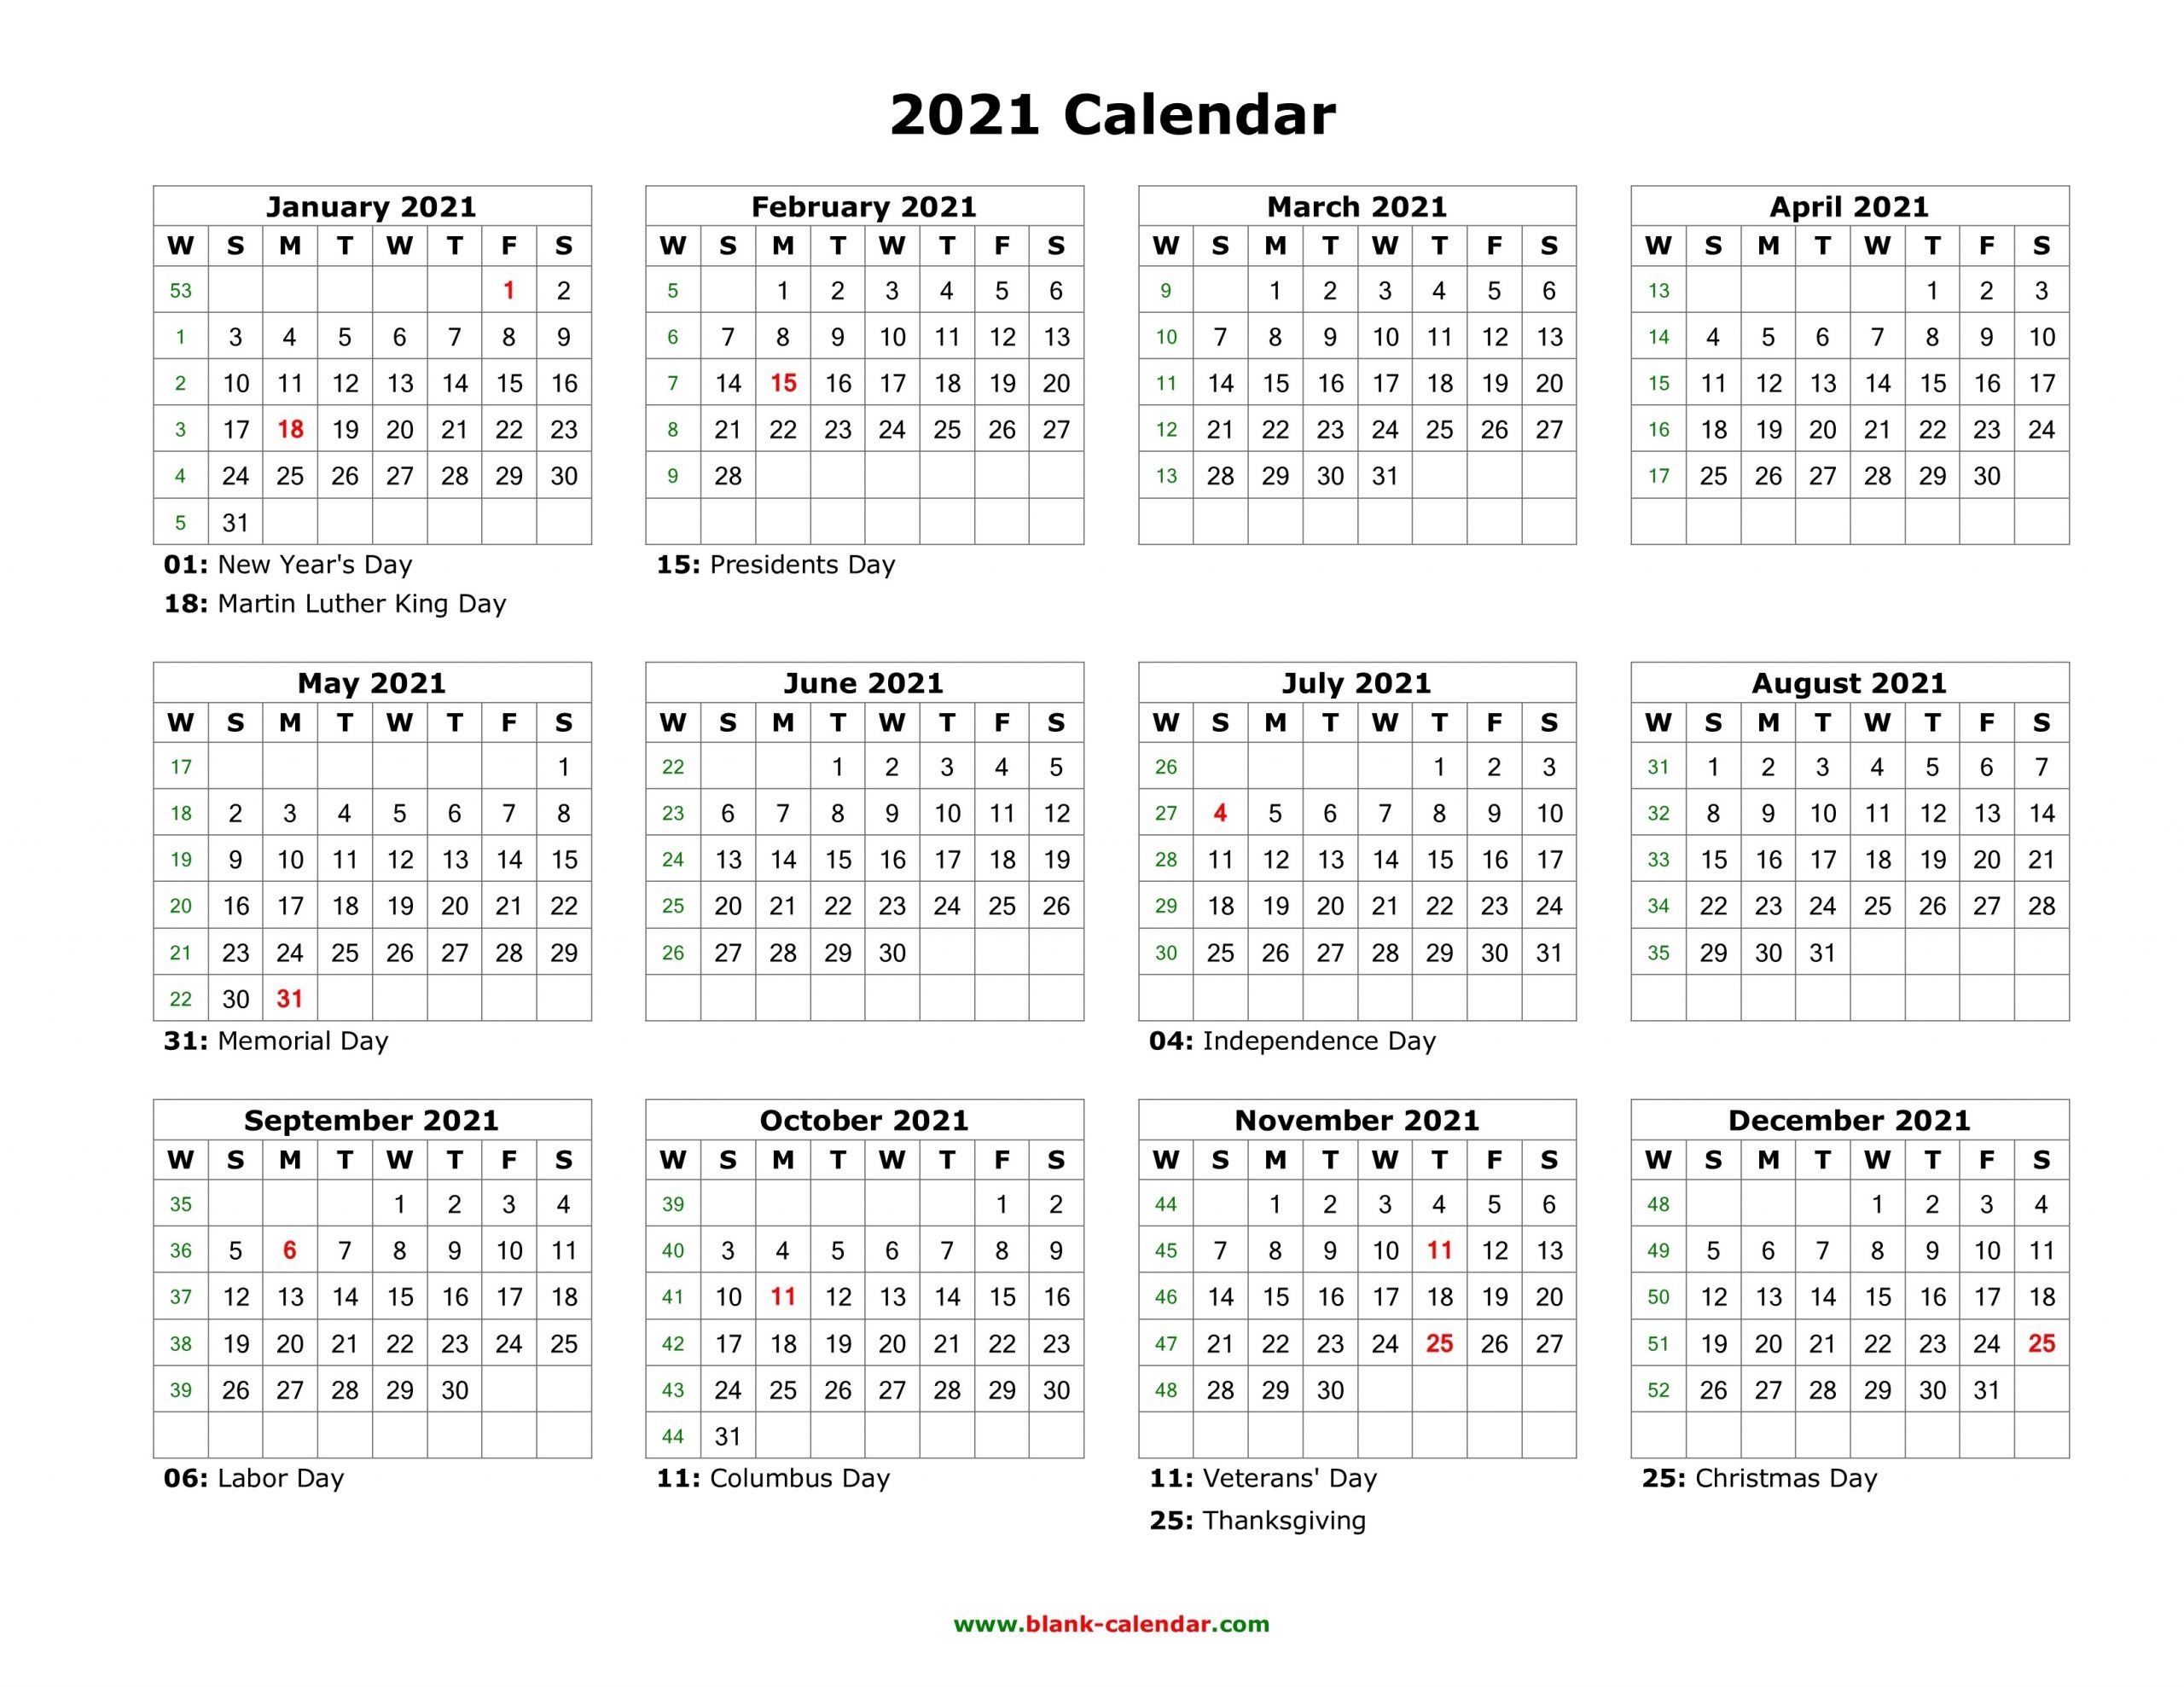 Blank Calendar 2021 | Free Download Calendar Templates-2021 Vacation Calendar Template